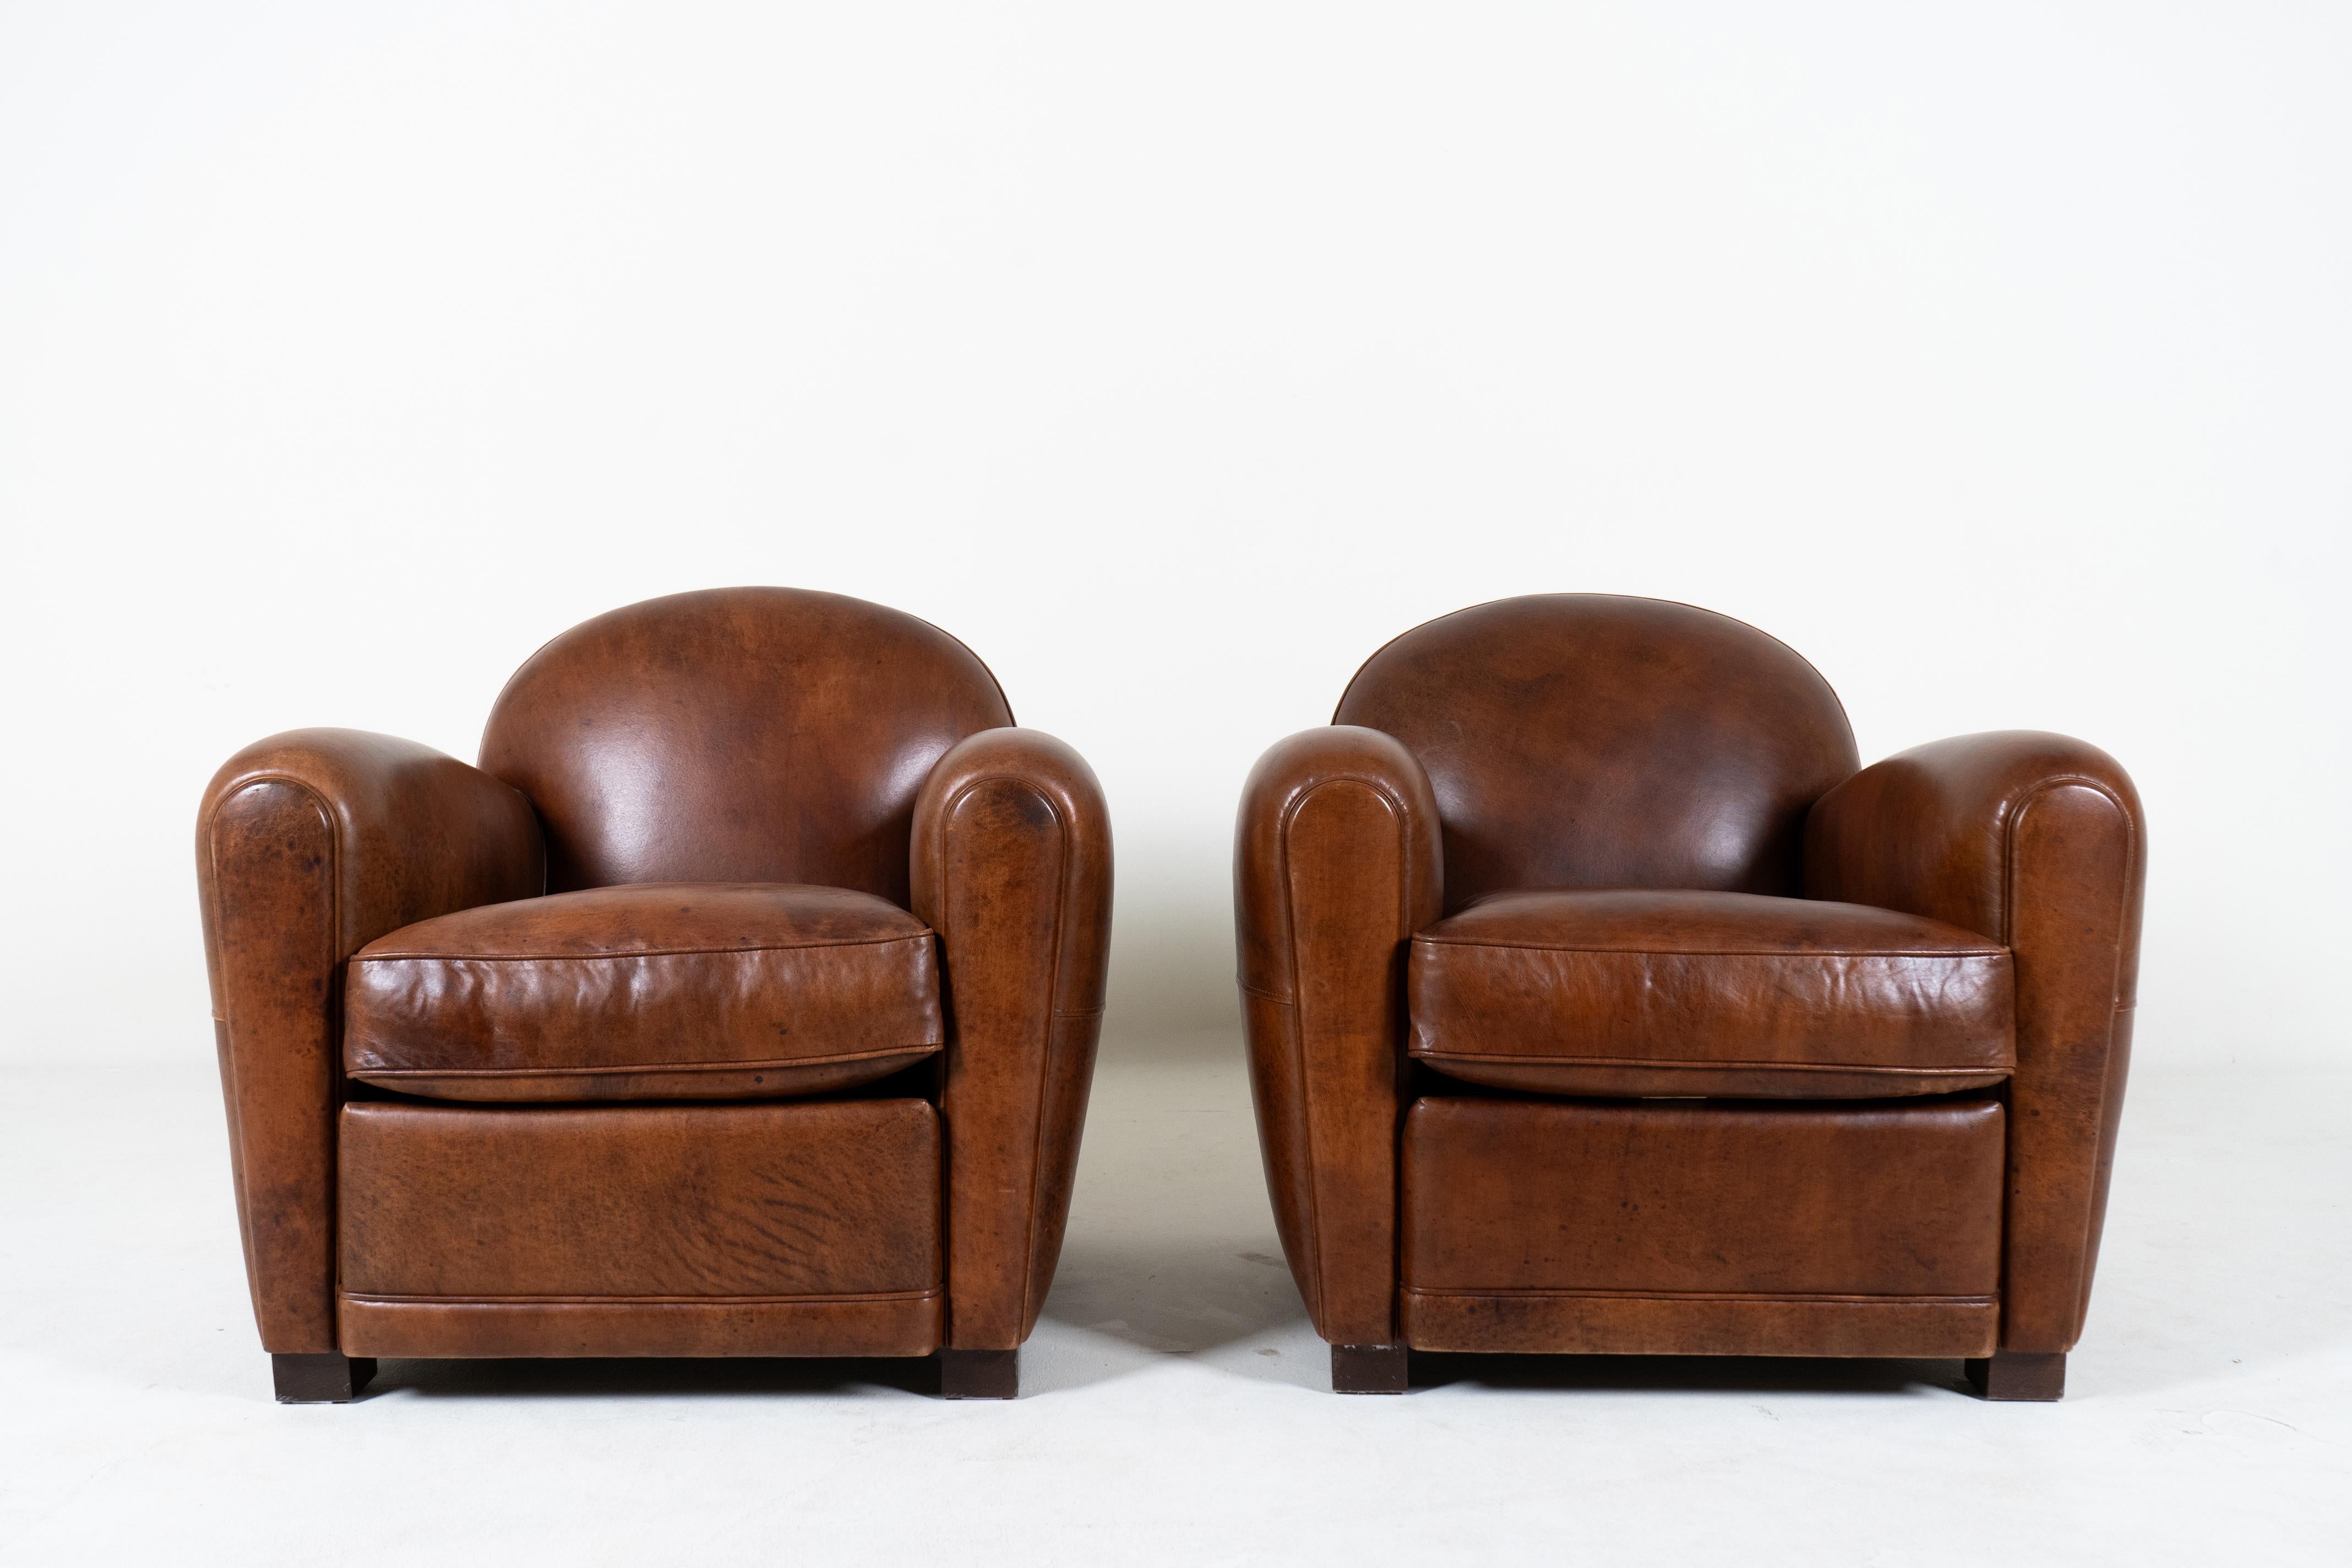 Cette paire de fauteuils club contemporains Art déco français est une pièce rare. Avec un design datant du mouvement Art Moderne des années 1920-1940, ces chaises définissent une ère de style parisien. La couleur brun-noisette frappante a une belle